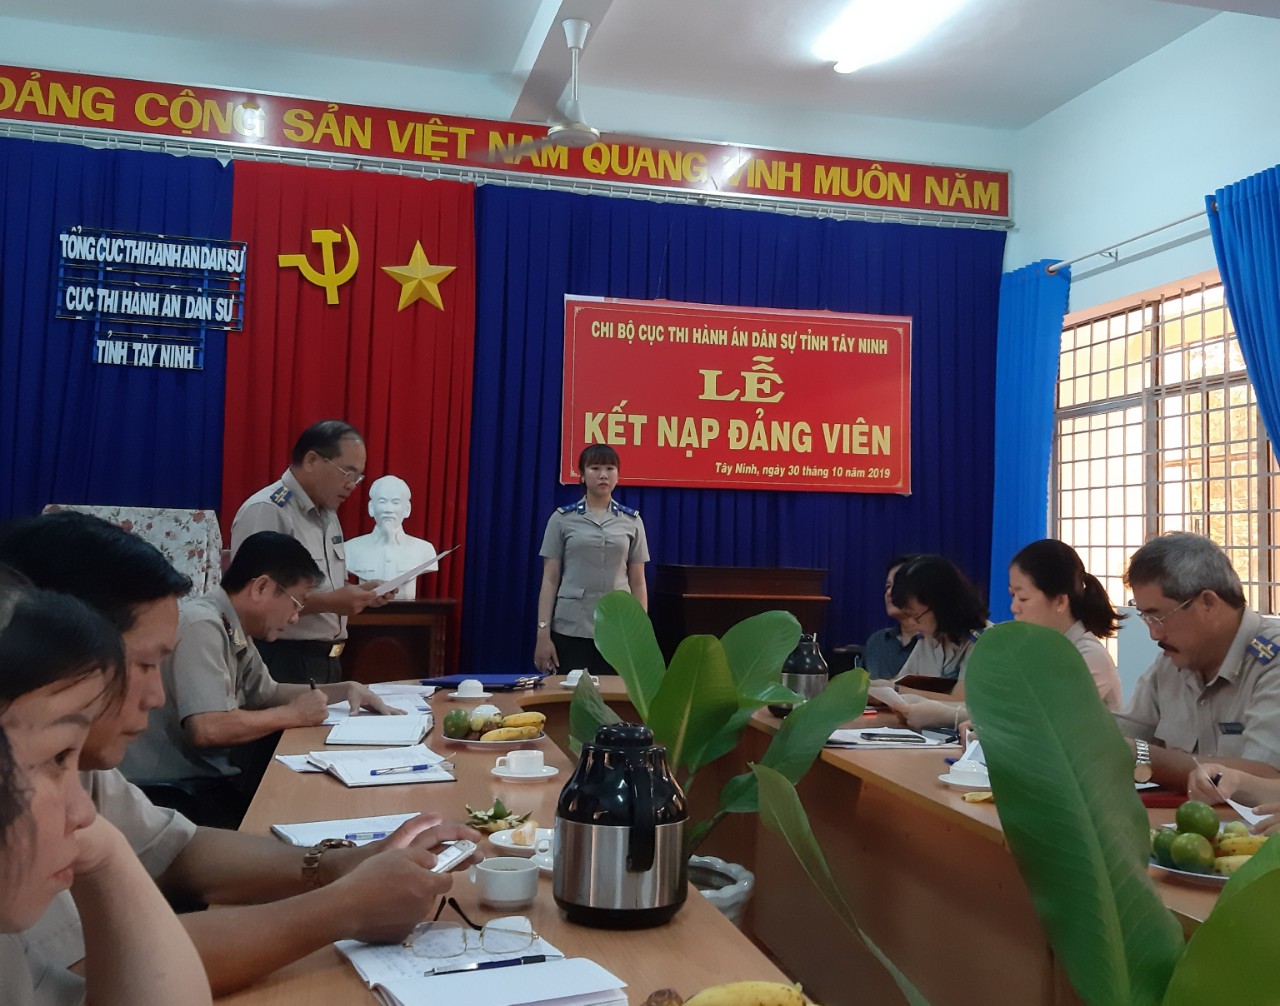 Chi bộ Cục Thi hành án dân sự tỉnh Tây Ninh tổ chức Lễ kết nạp Đảng viên năm 2019